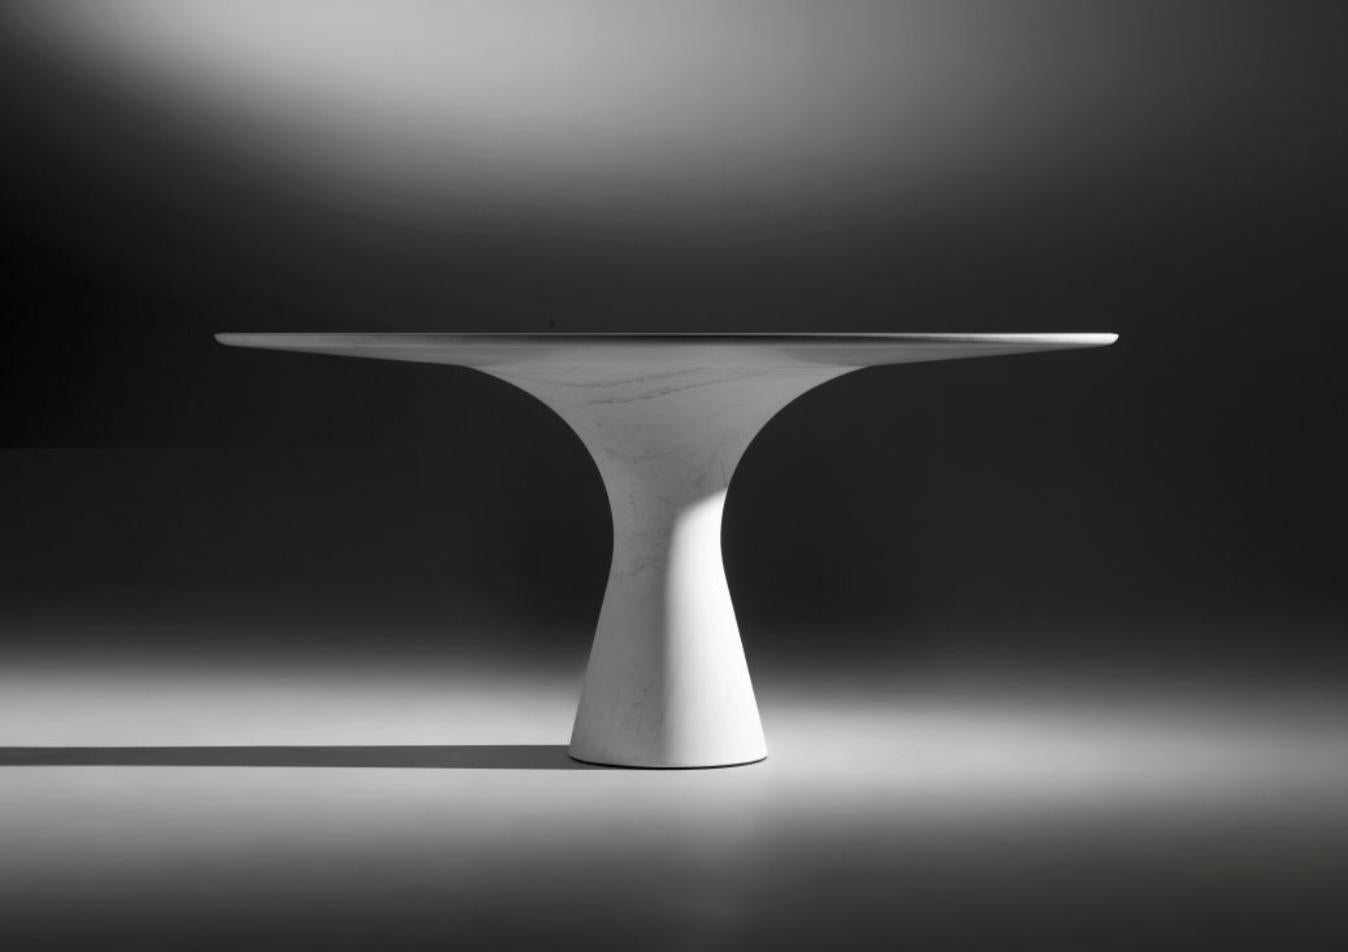 Table ronde basse en marbre Kynos Refined Contemporary
Dimensions : 100 x H 36 cm
Matériaux : Kynos
Angelo est l'essence même d'une table ronde en pierre naturelle, une forme sculpturale dans un matériau robuste aux lignes élégantes et aux